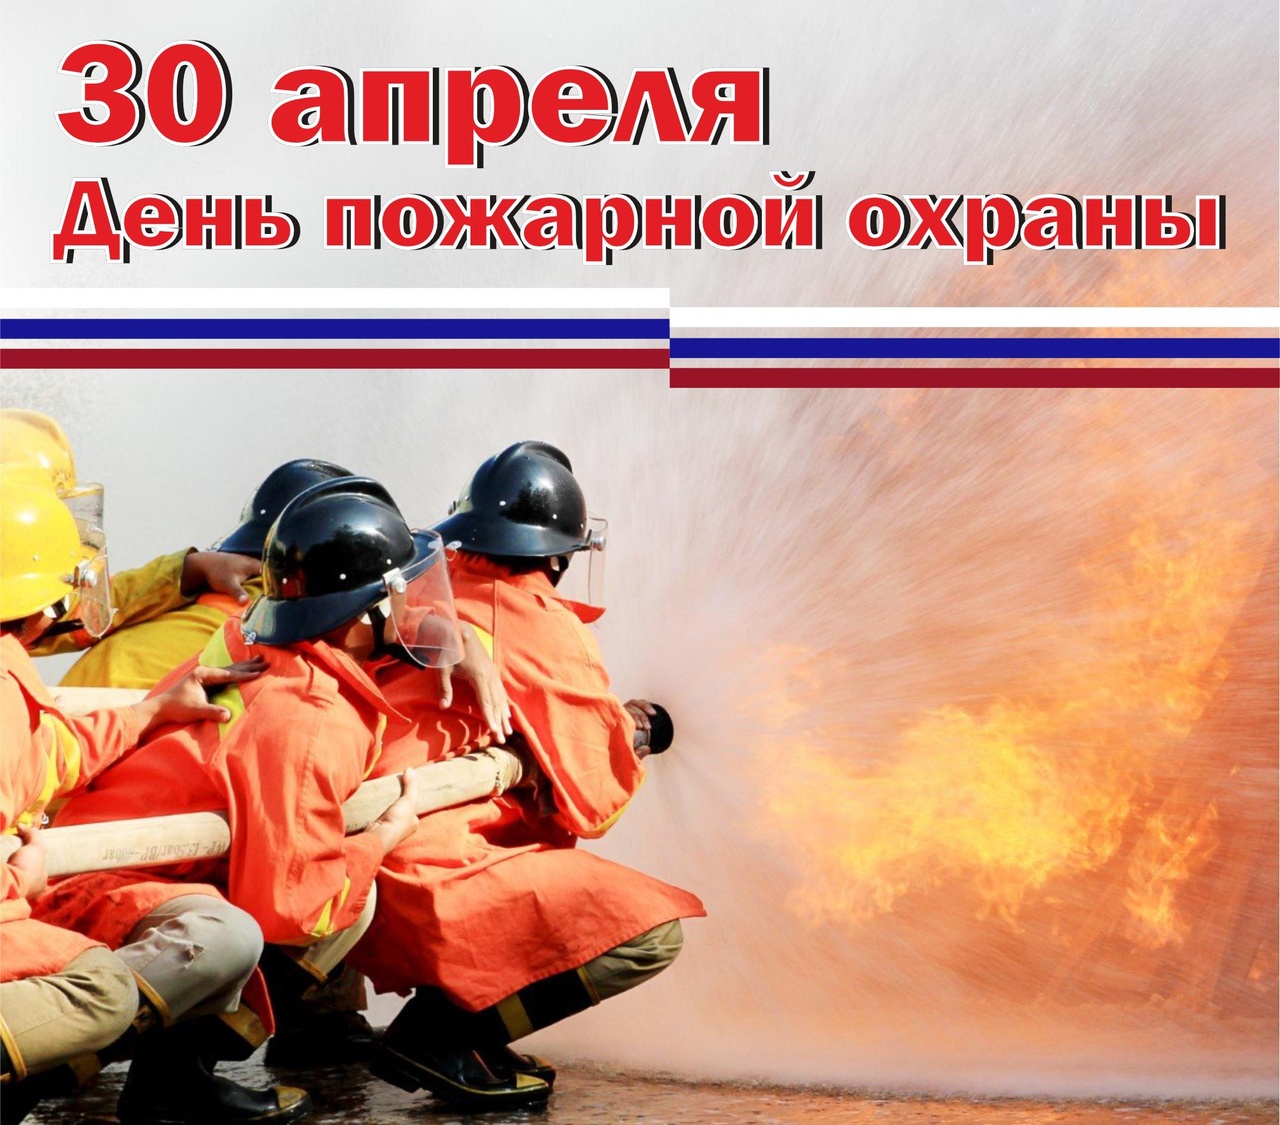 Уважаемые ветераны пожарной охраны и сотрудники Министерства чрезвычайных ситуаций!.